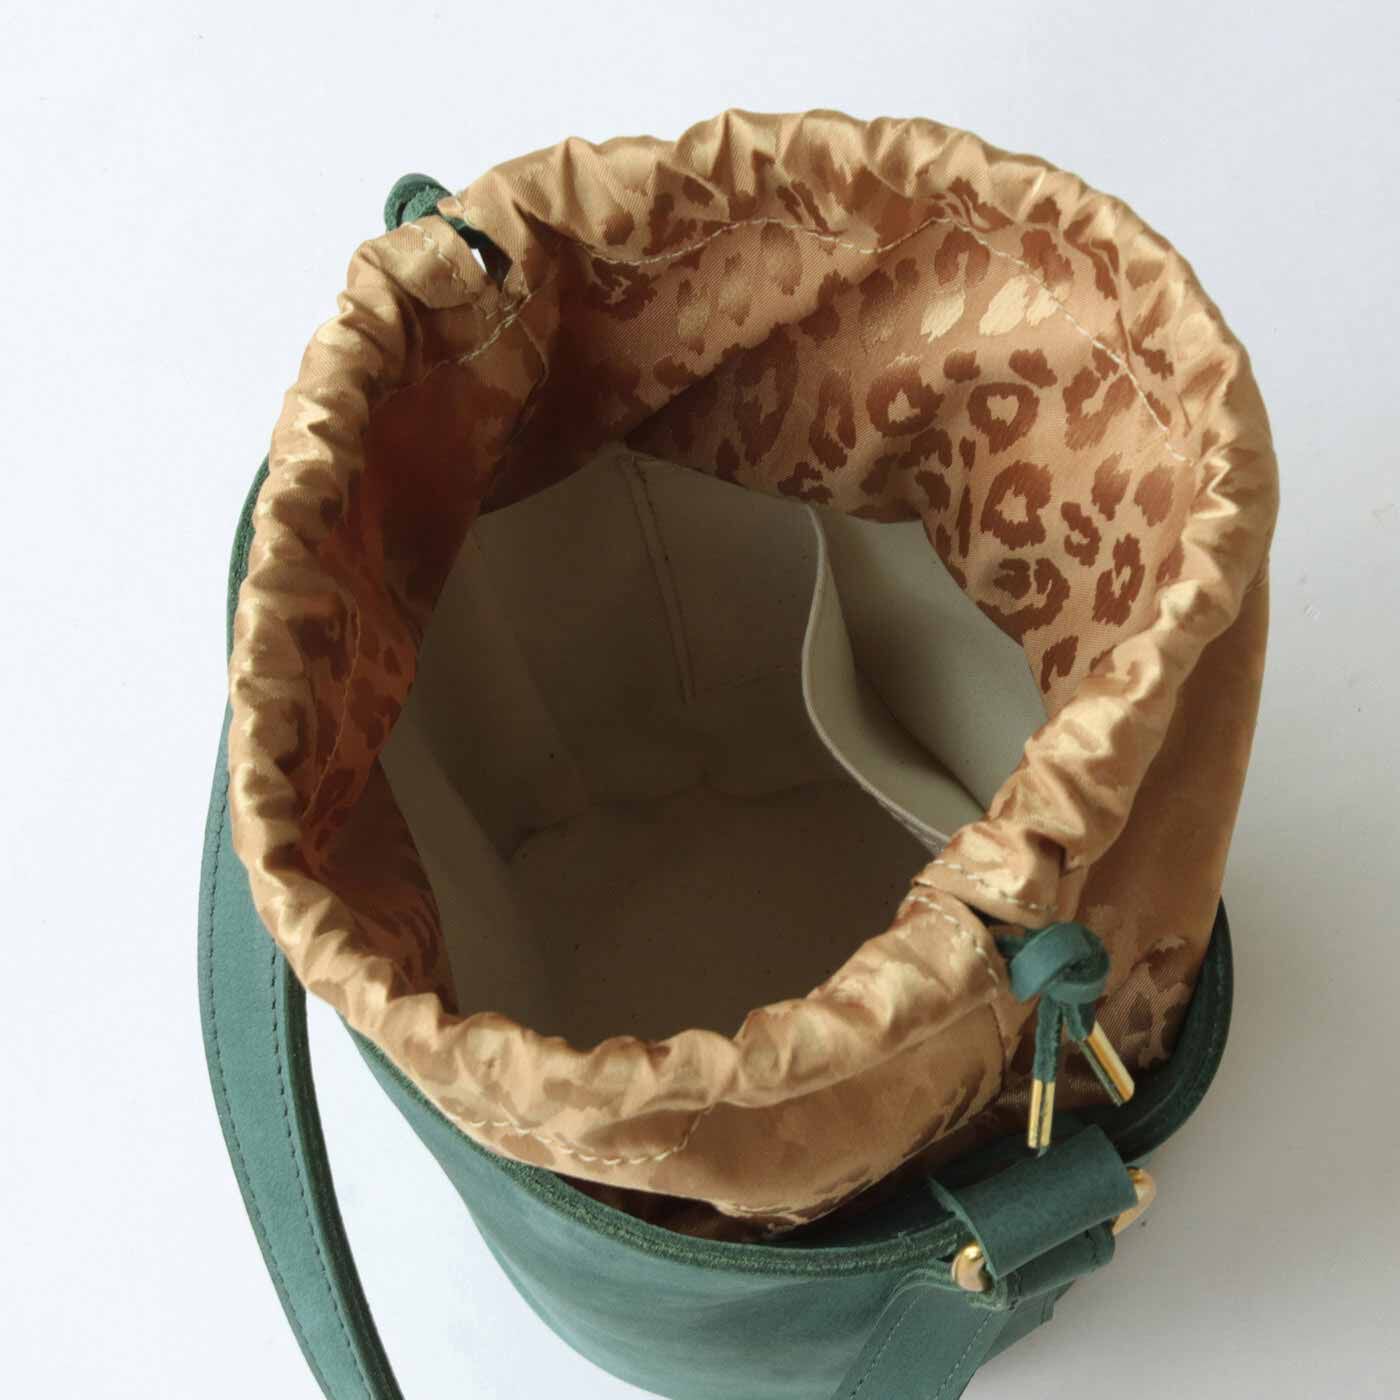 ＆Stories|福岡の鞄作家と作った 職人本革のシトゥルスバッグ〈ターコイズ〉[本革　鞄：日本製]|内生地はしっかりとした綿素材。